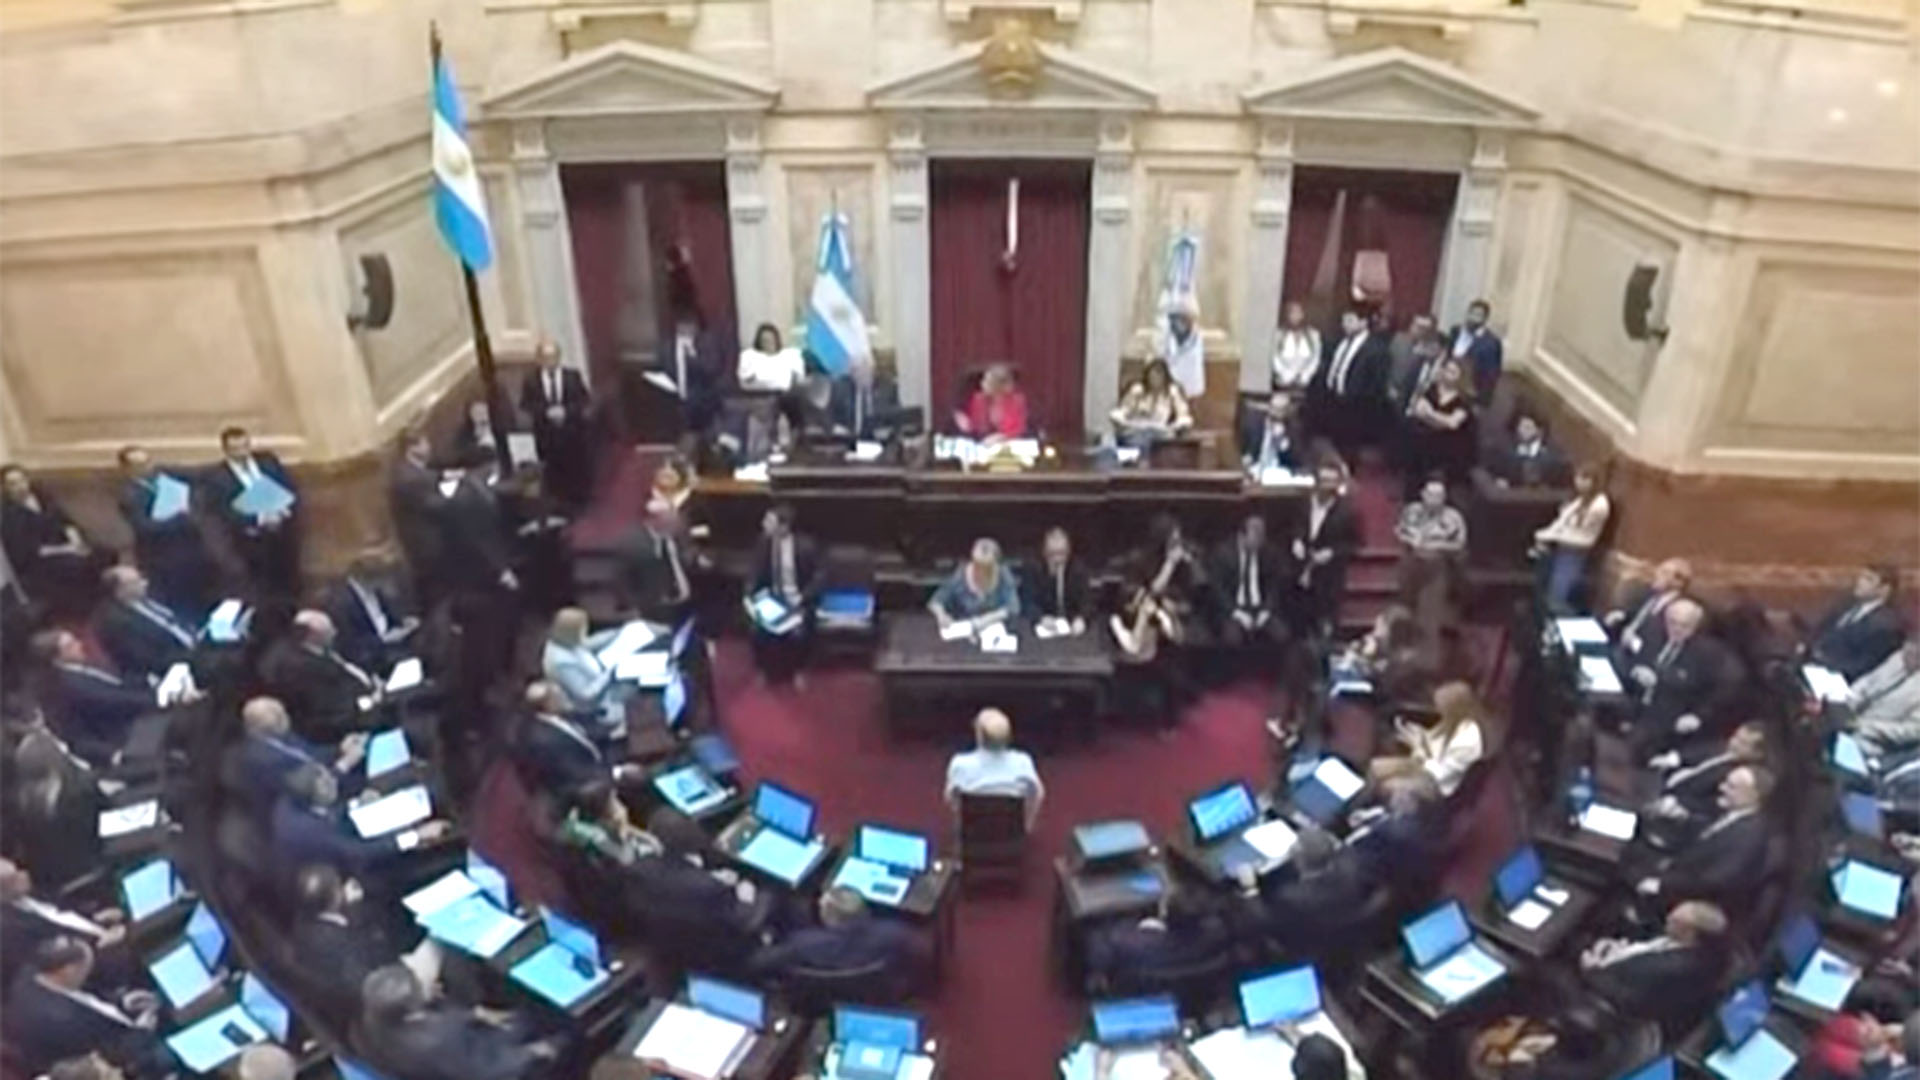 Sesión en el Senado: sin la presencia de Cristina Kirchner, el oficialismo y la oposición debaten en el recinto luego de cuatro meses de parálisis